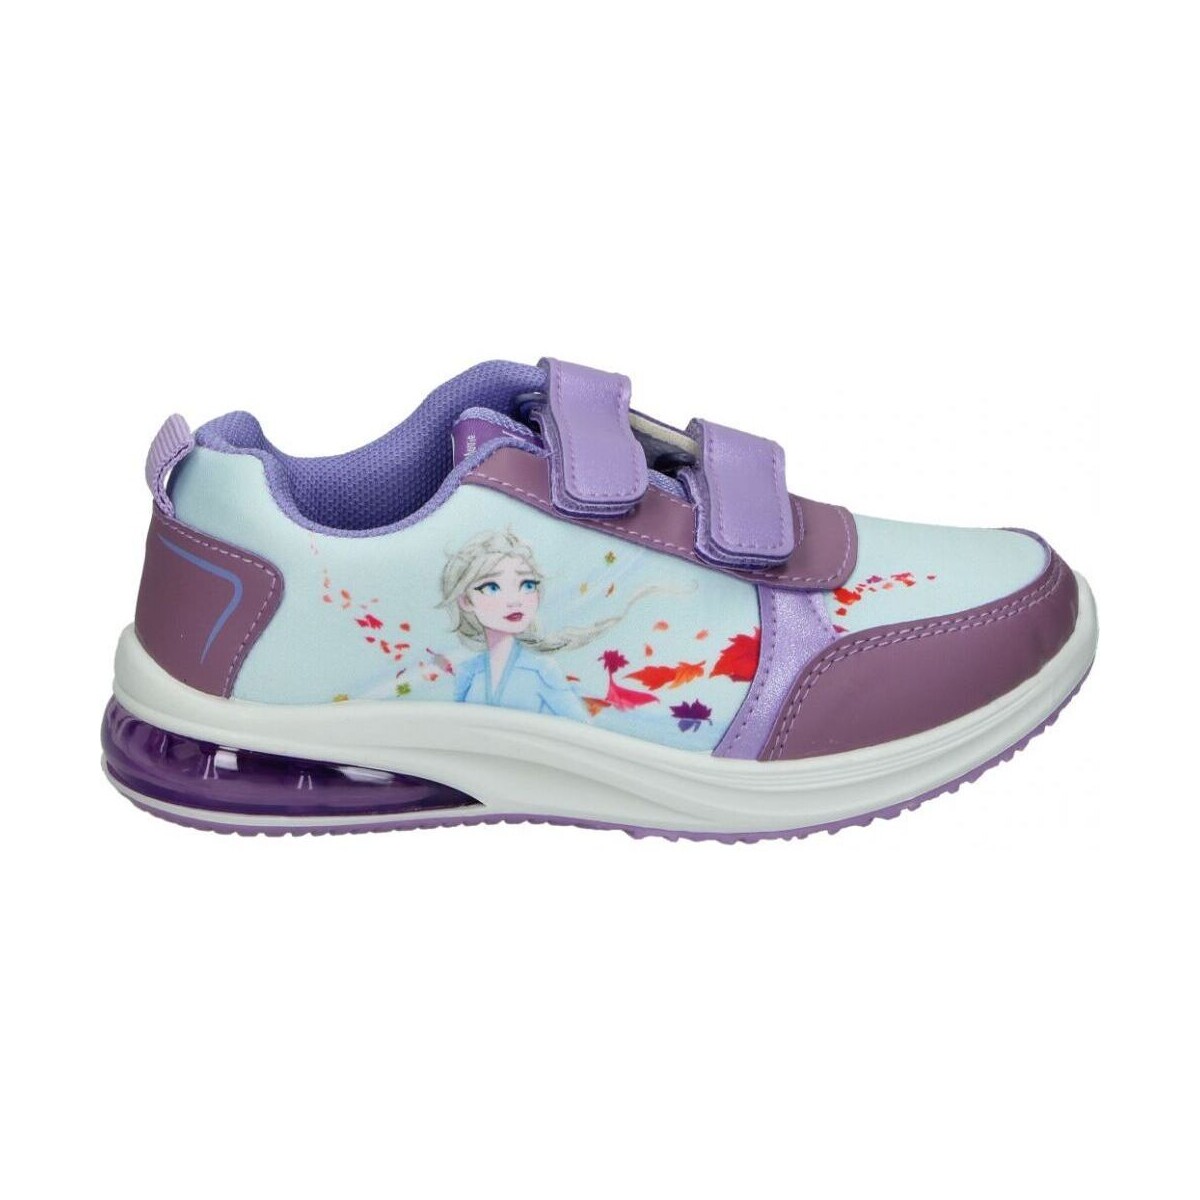 Schoenen Kinderen Sneakers Cerda 5394 FROZEN Violet